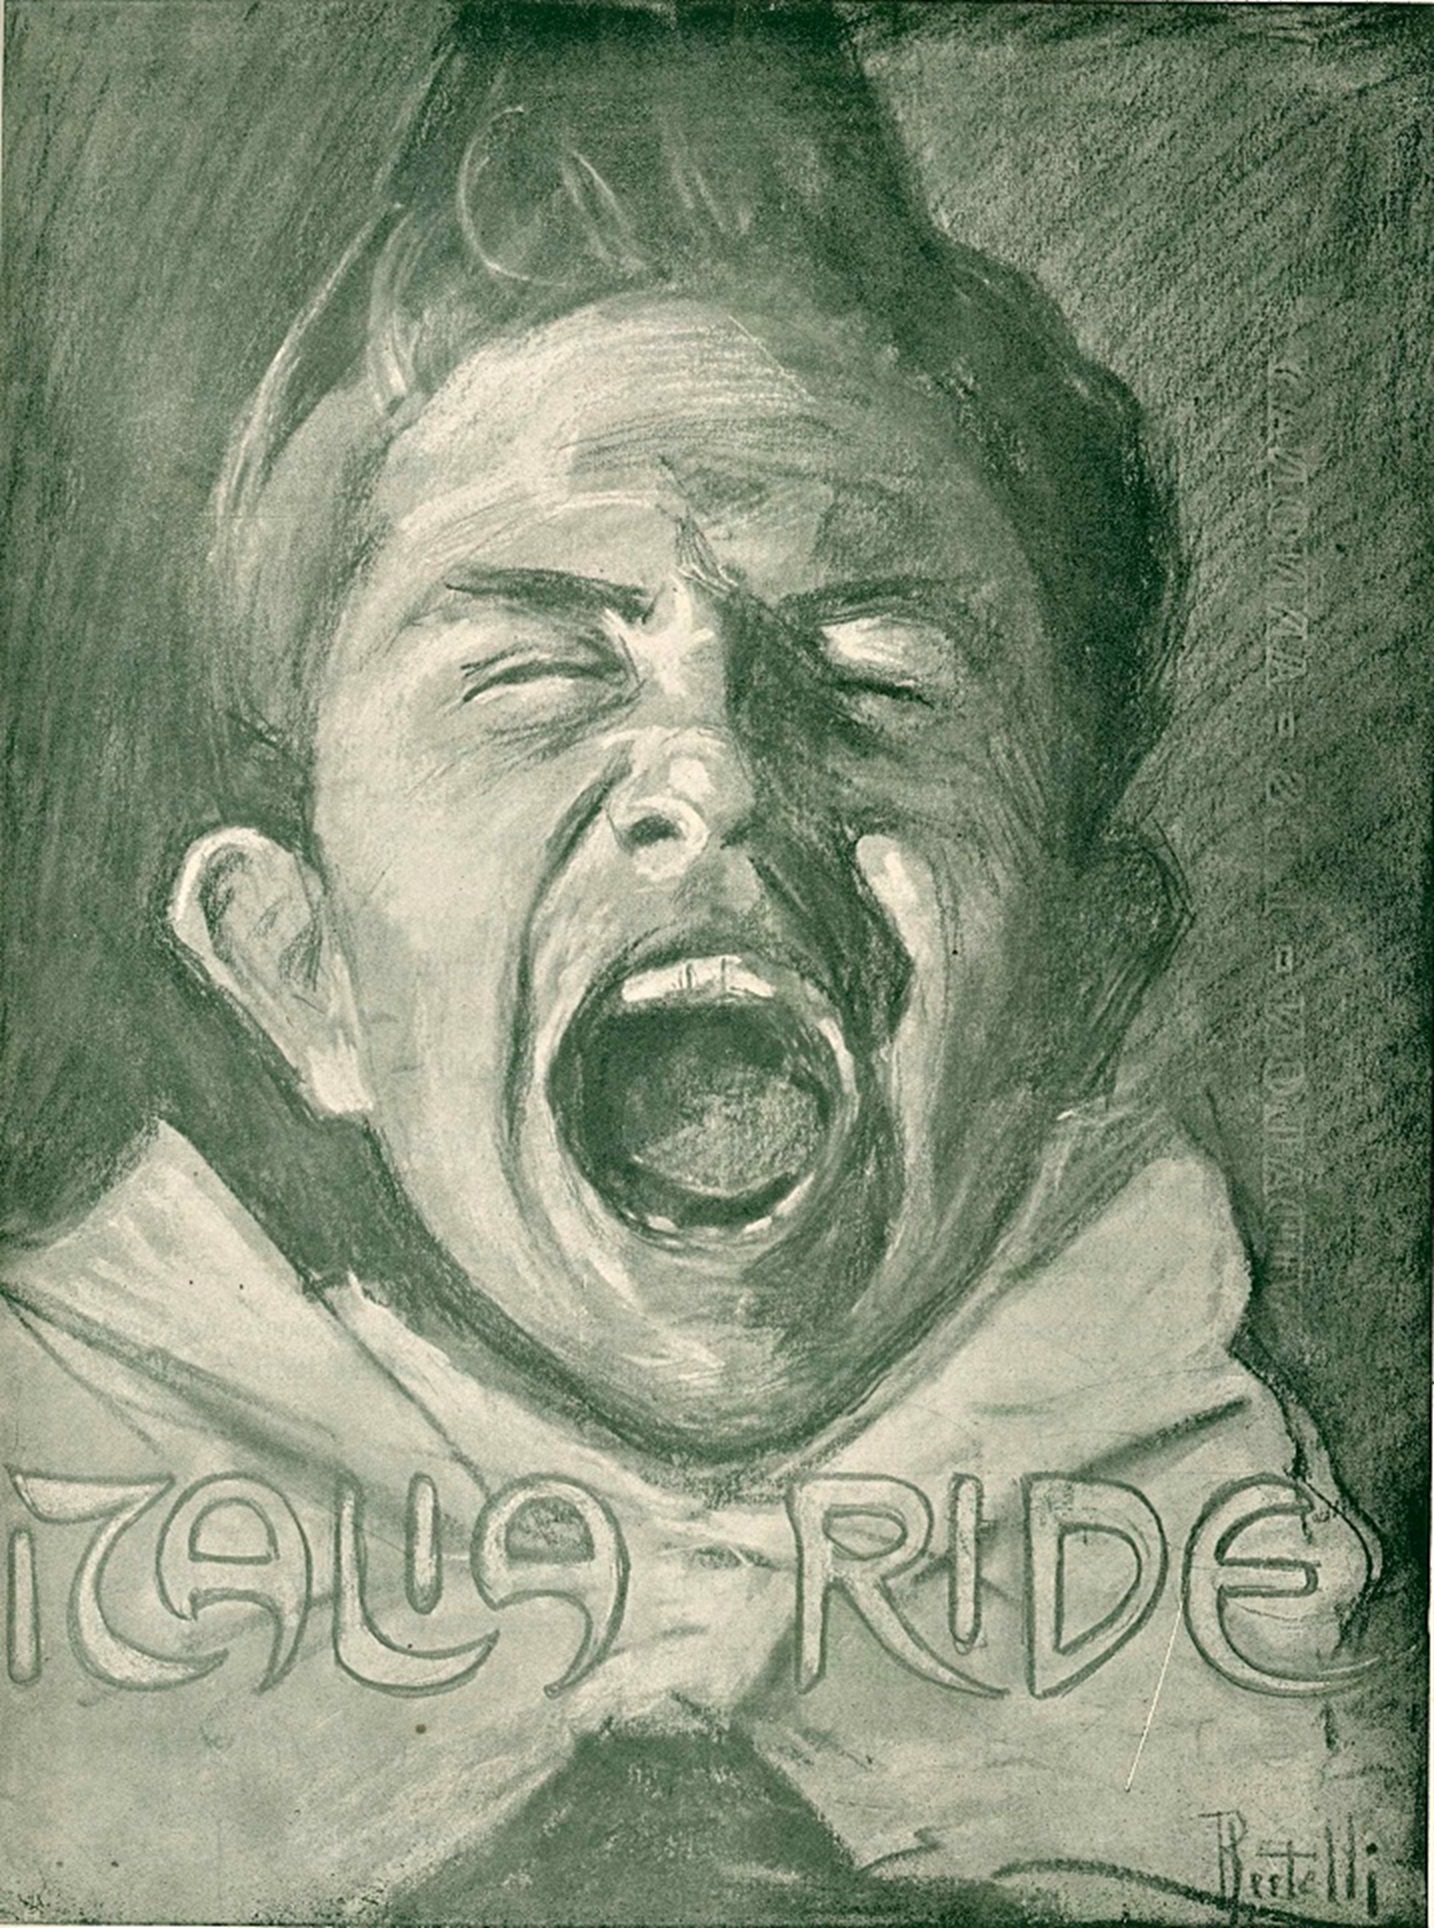 Flavio Bertelli (San Lazzaro di Savena, 1865 – Rimini, 1941) Italia Ride Illustrazione per la copertina di Italia ride n. 20, Bologna, 19 maggio 1900 Collezione privata